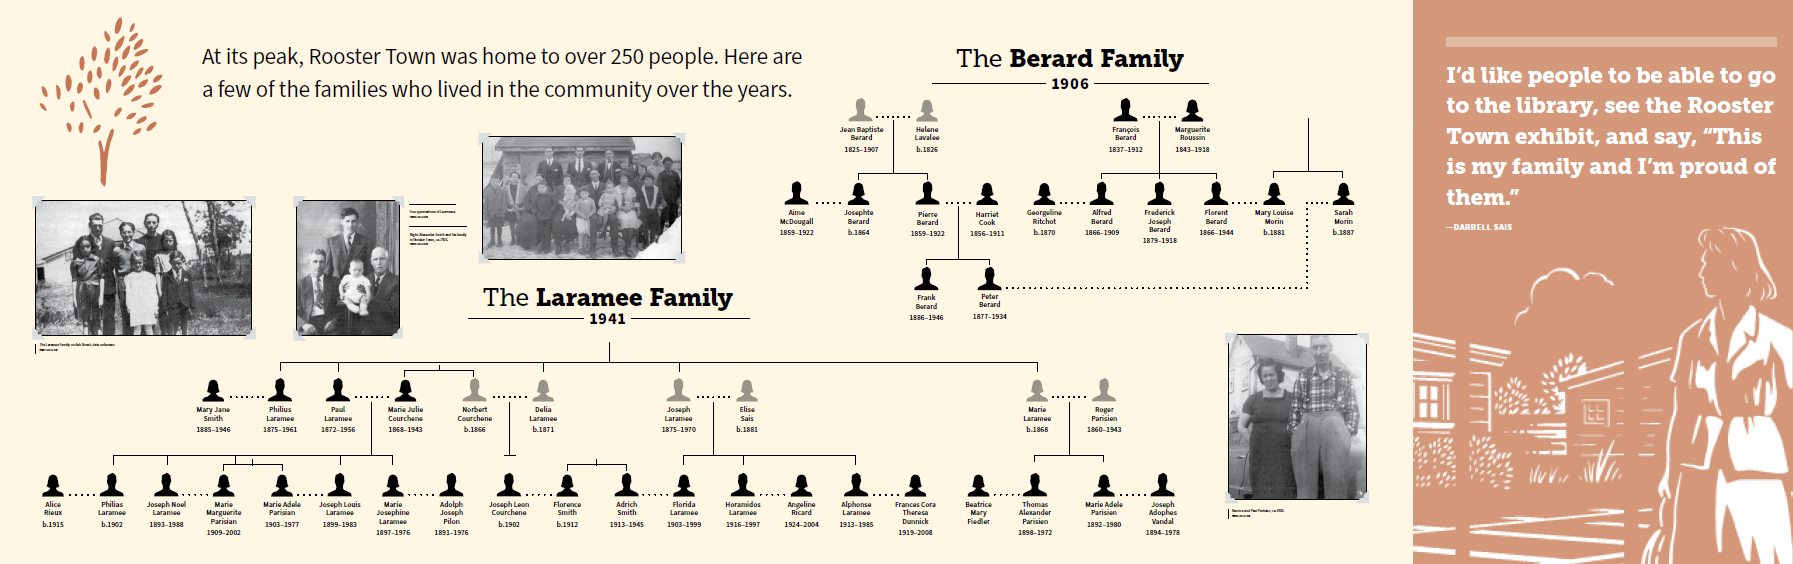 The Berard Family